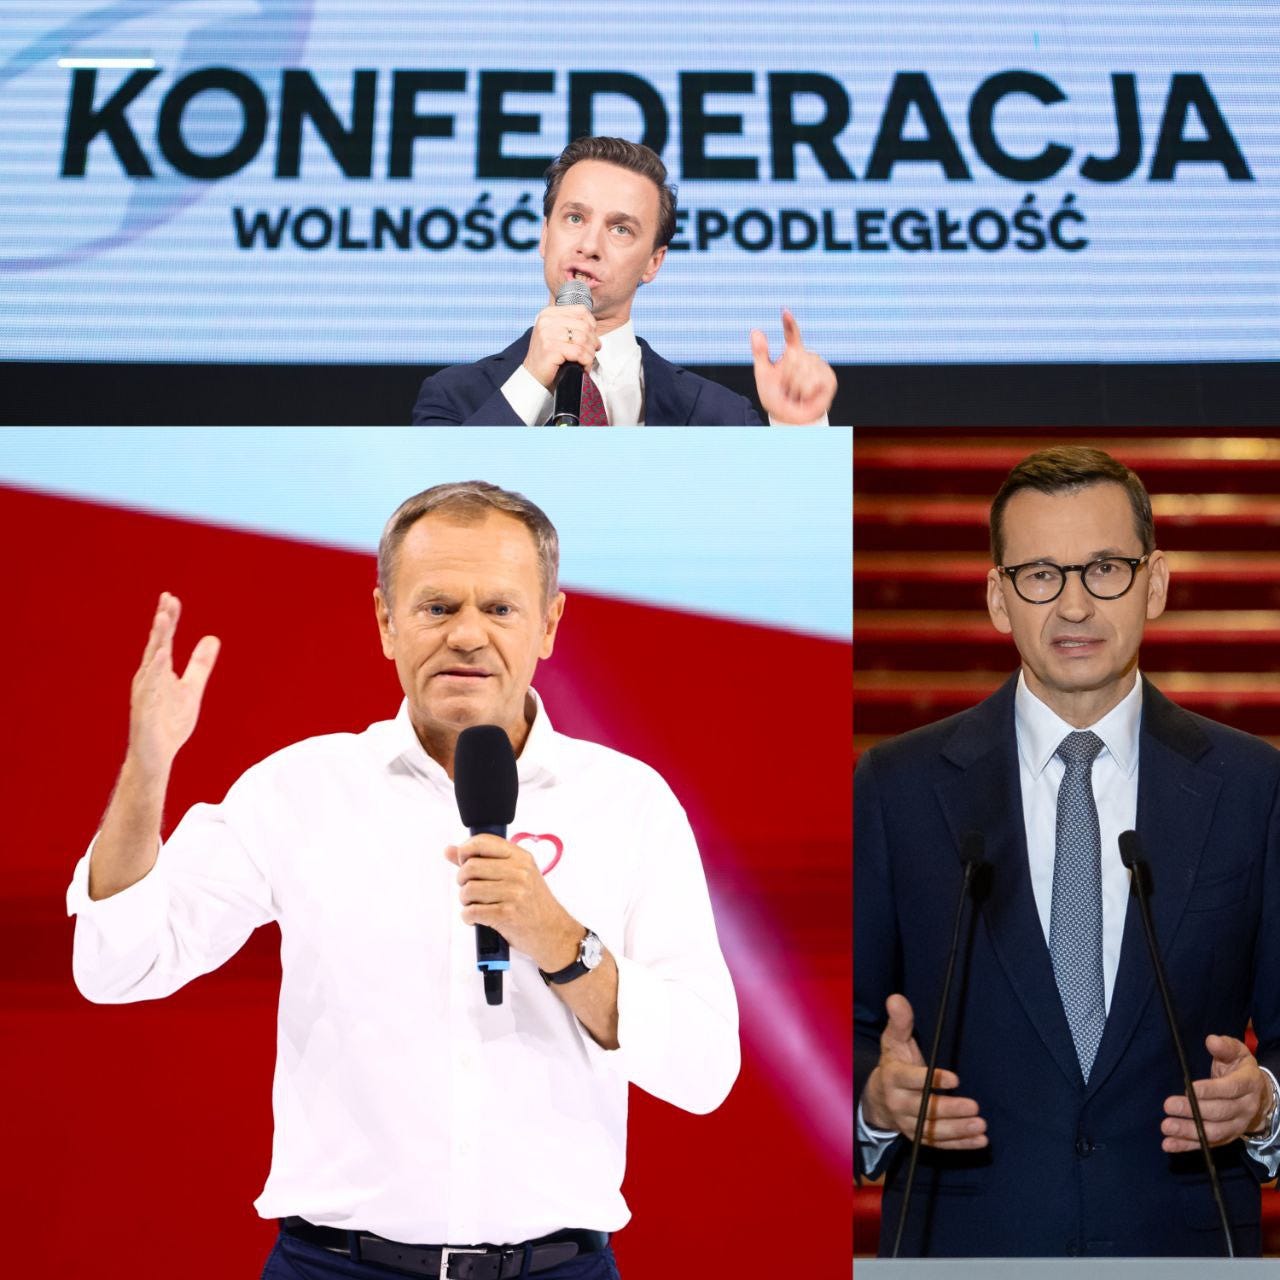 Polskie wybory